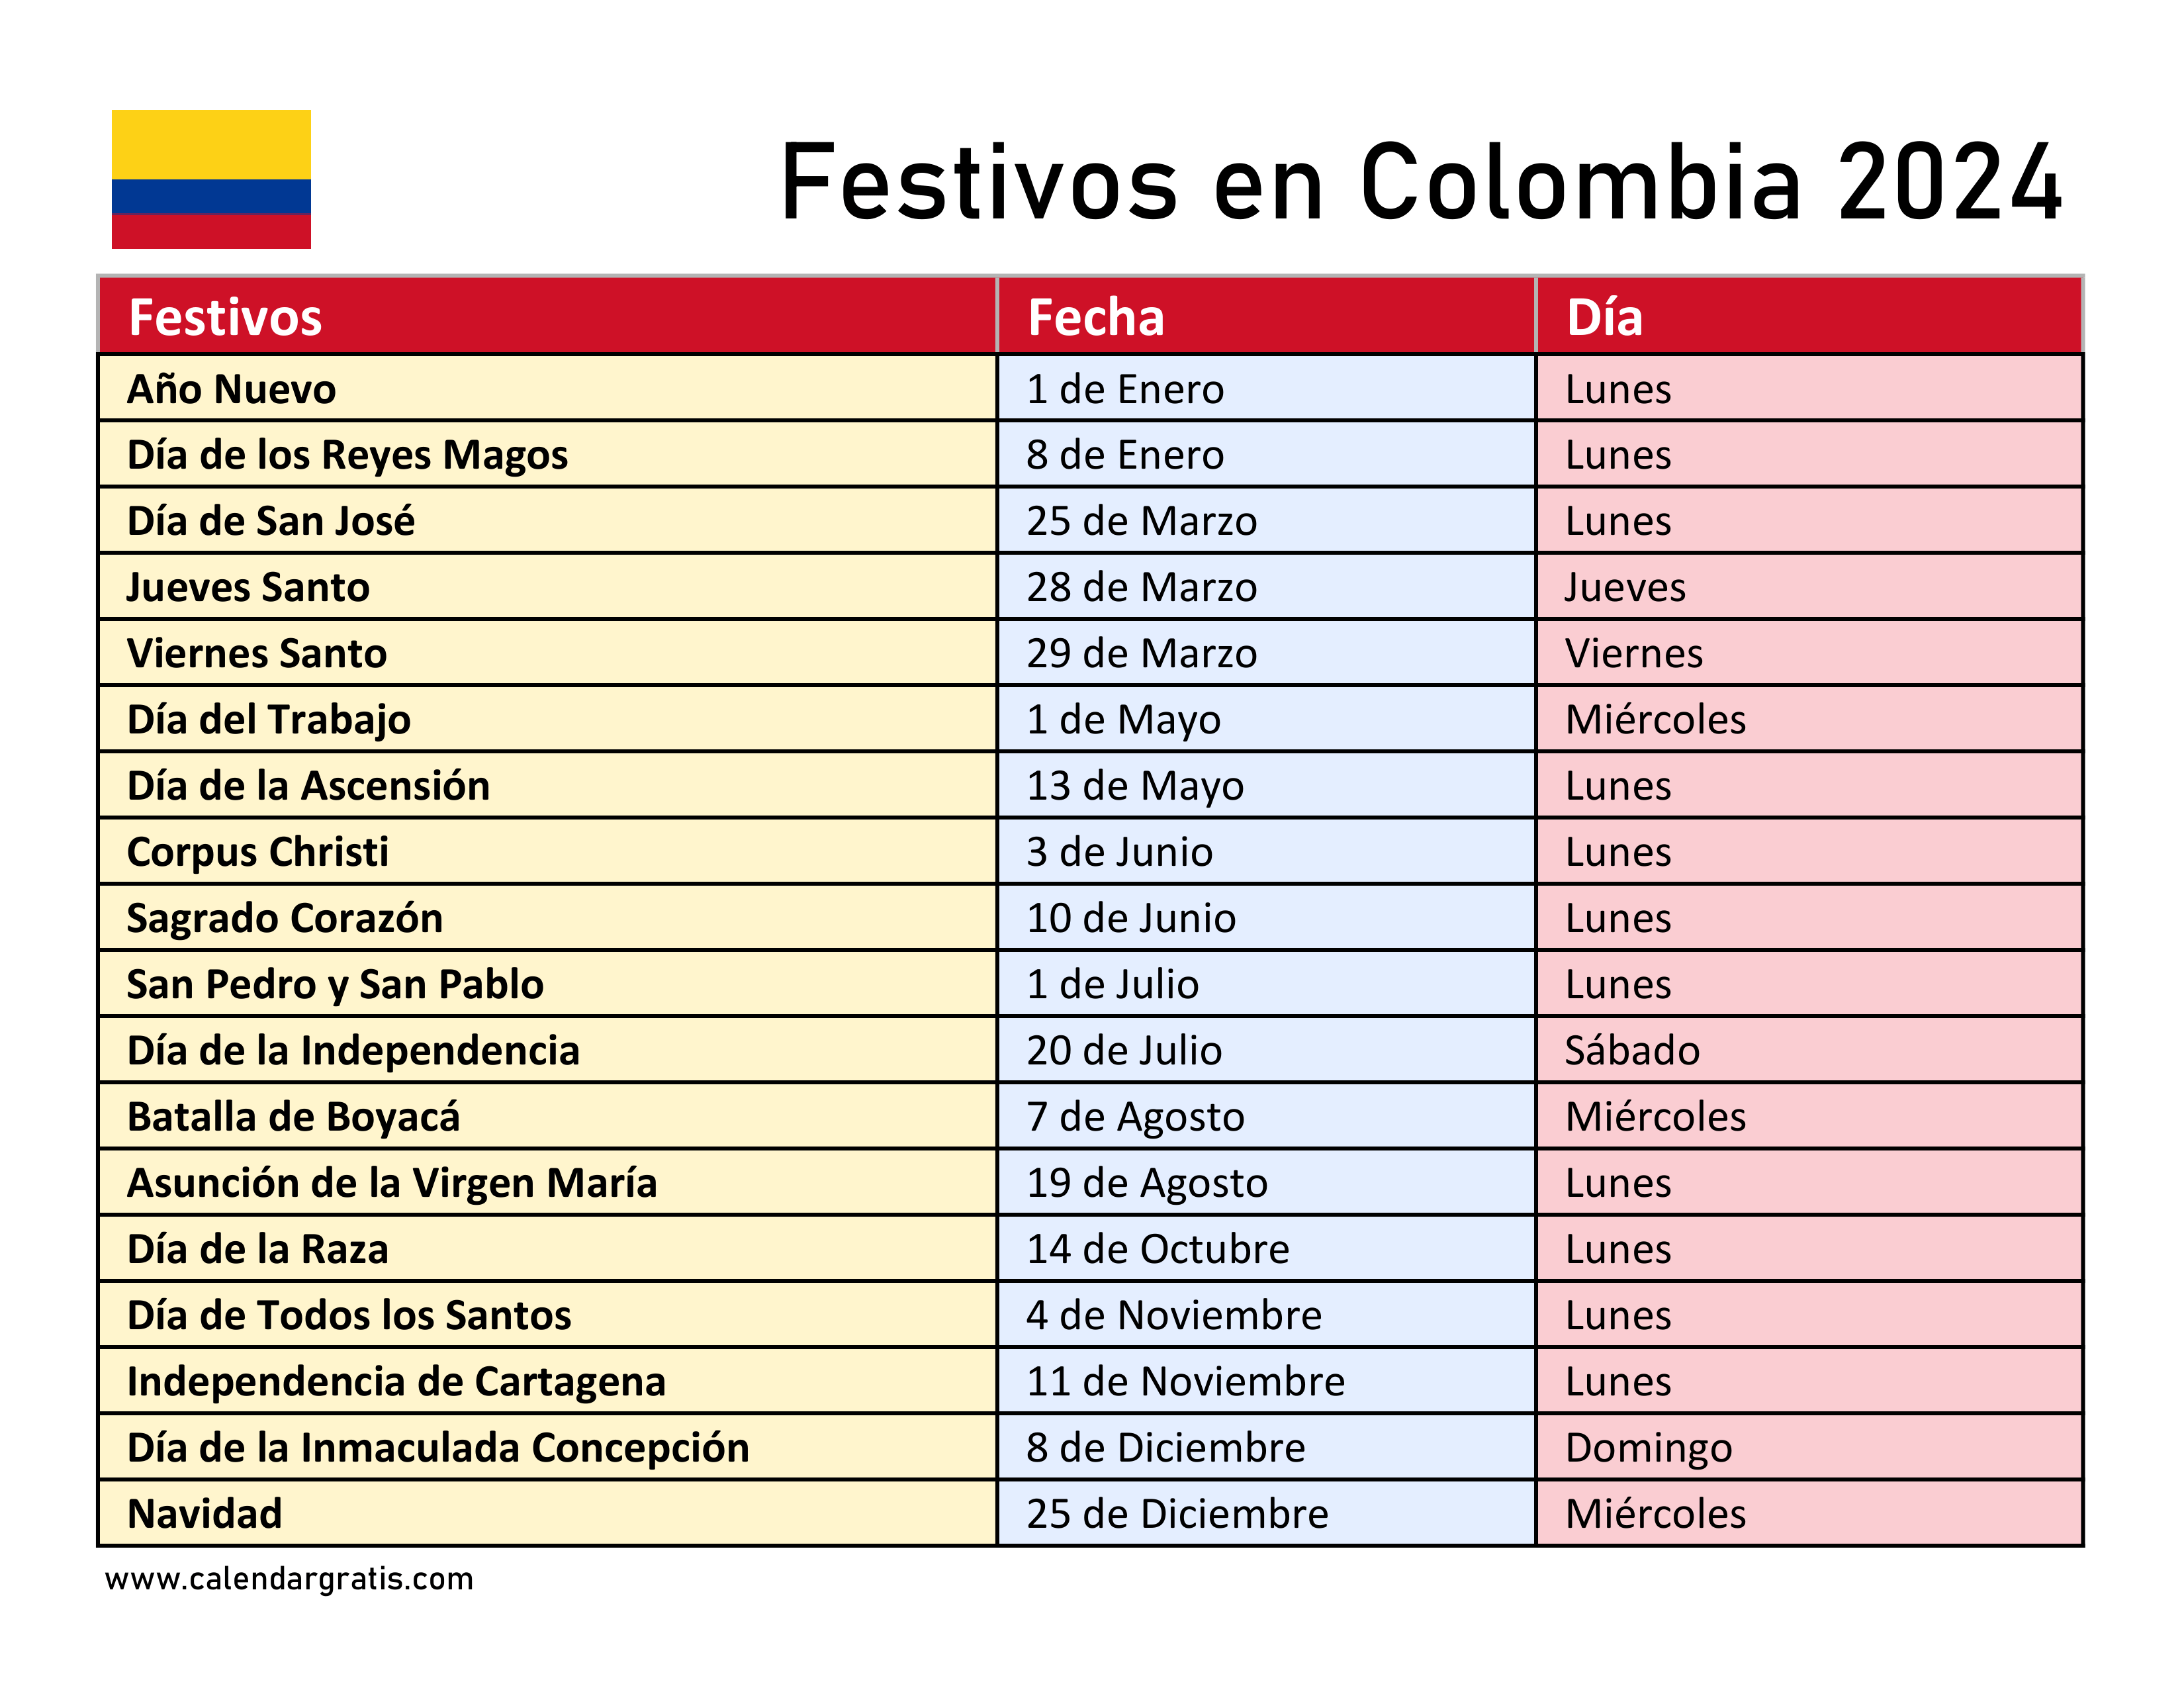 Imagen ilustrativa del Calendario de Festivos en Colombia para el año 2024, mostrando una lista completa de todas las fechas festivas y días importantes del año en un formato claro y sencillo.